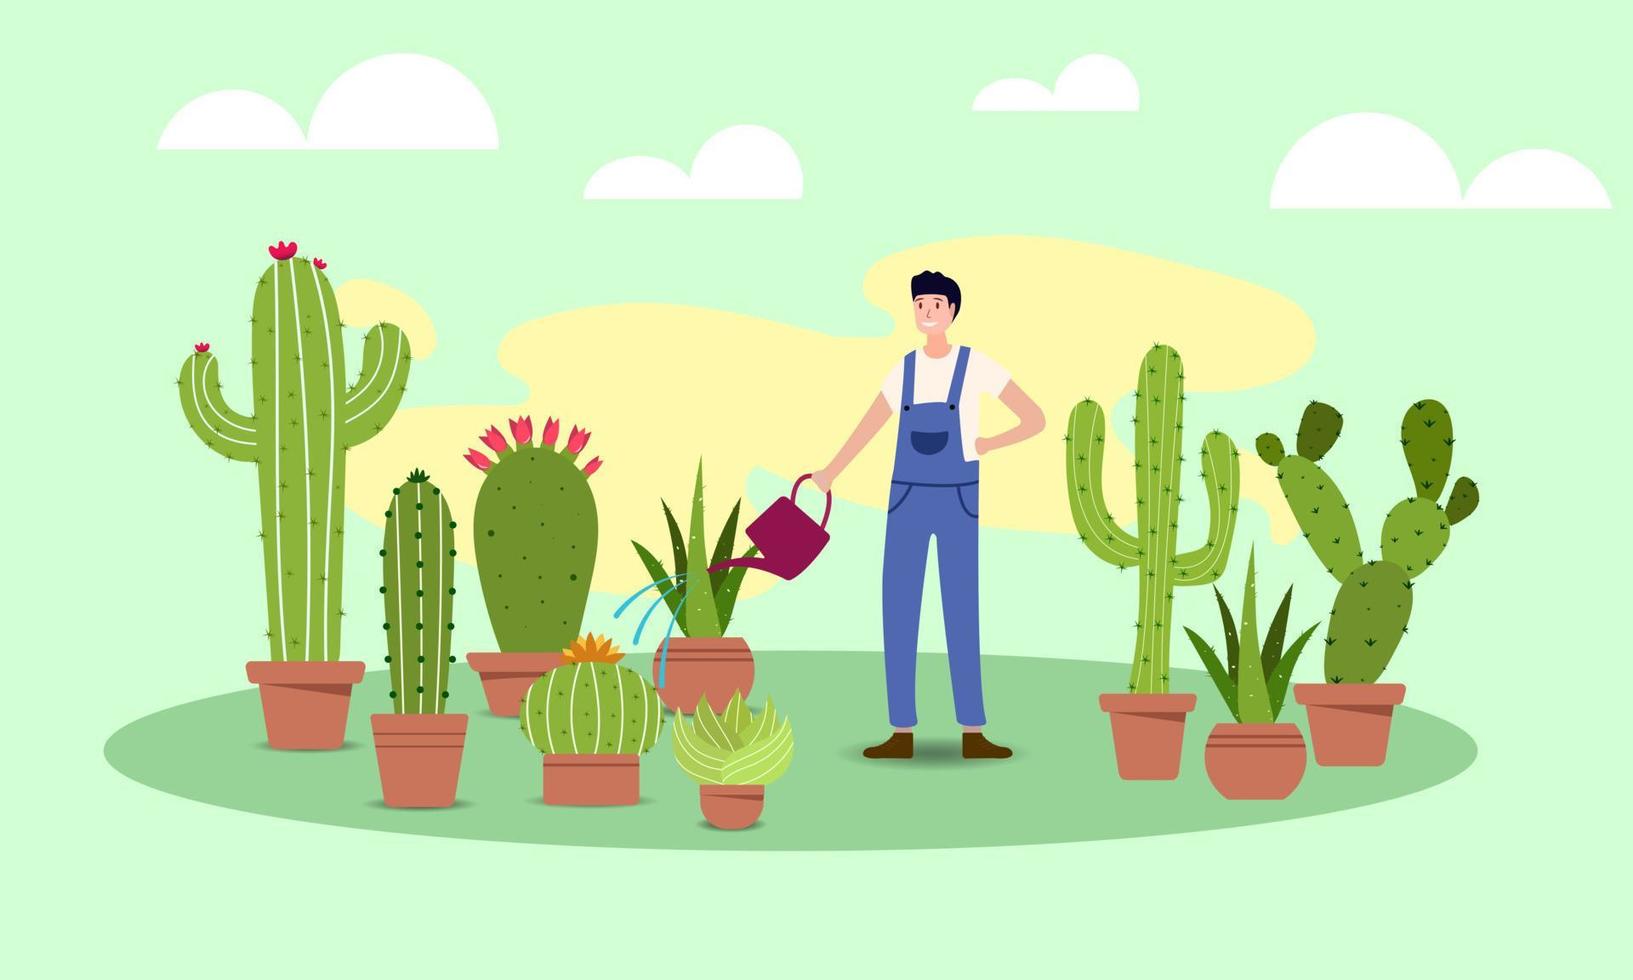 boer gebruik gieter blikjes naar water divers types van groen cactus in potten. de cactus heeft doornen dat omringen zelf net zo een minder hydrofoob Oppervlakte. boeren kan nu cultiveren en verkopen. vector